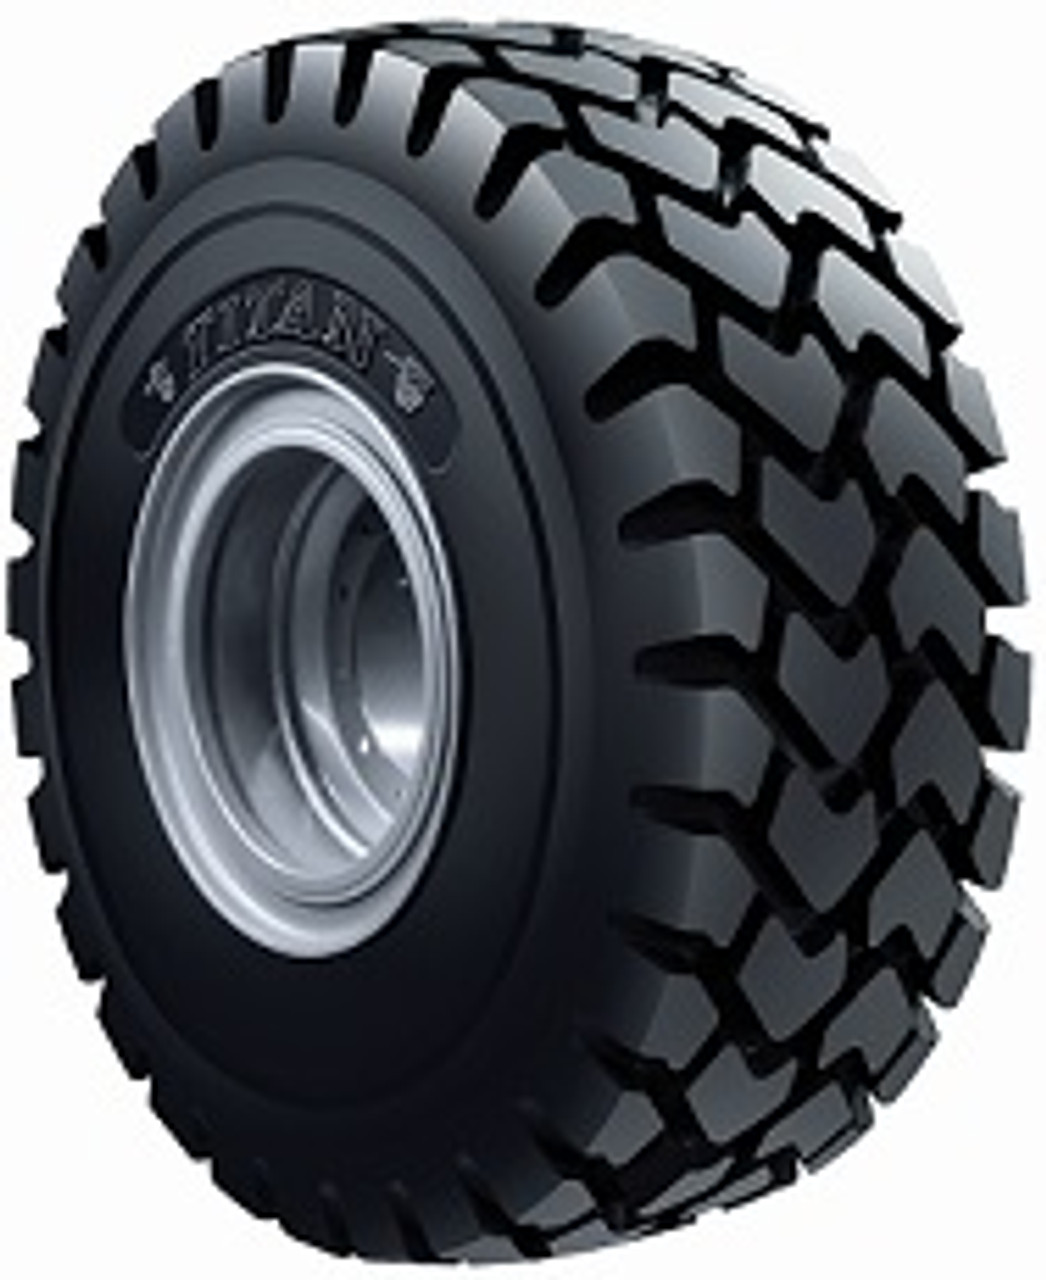 20.5R25 Pneumatic wheel Loader Tire- Raidial Titan MXL E3/L3